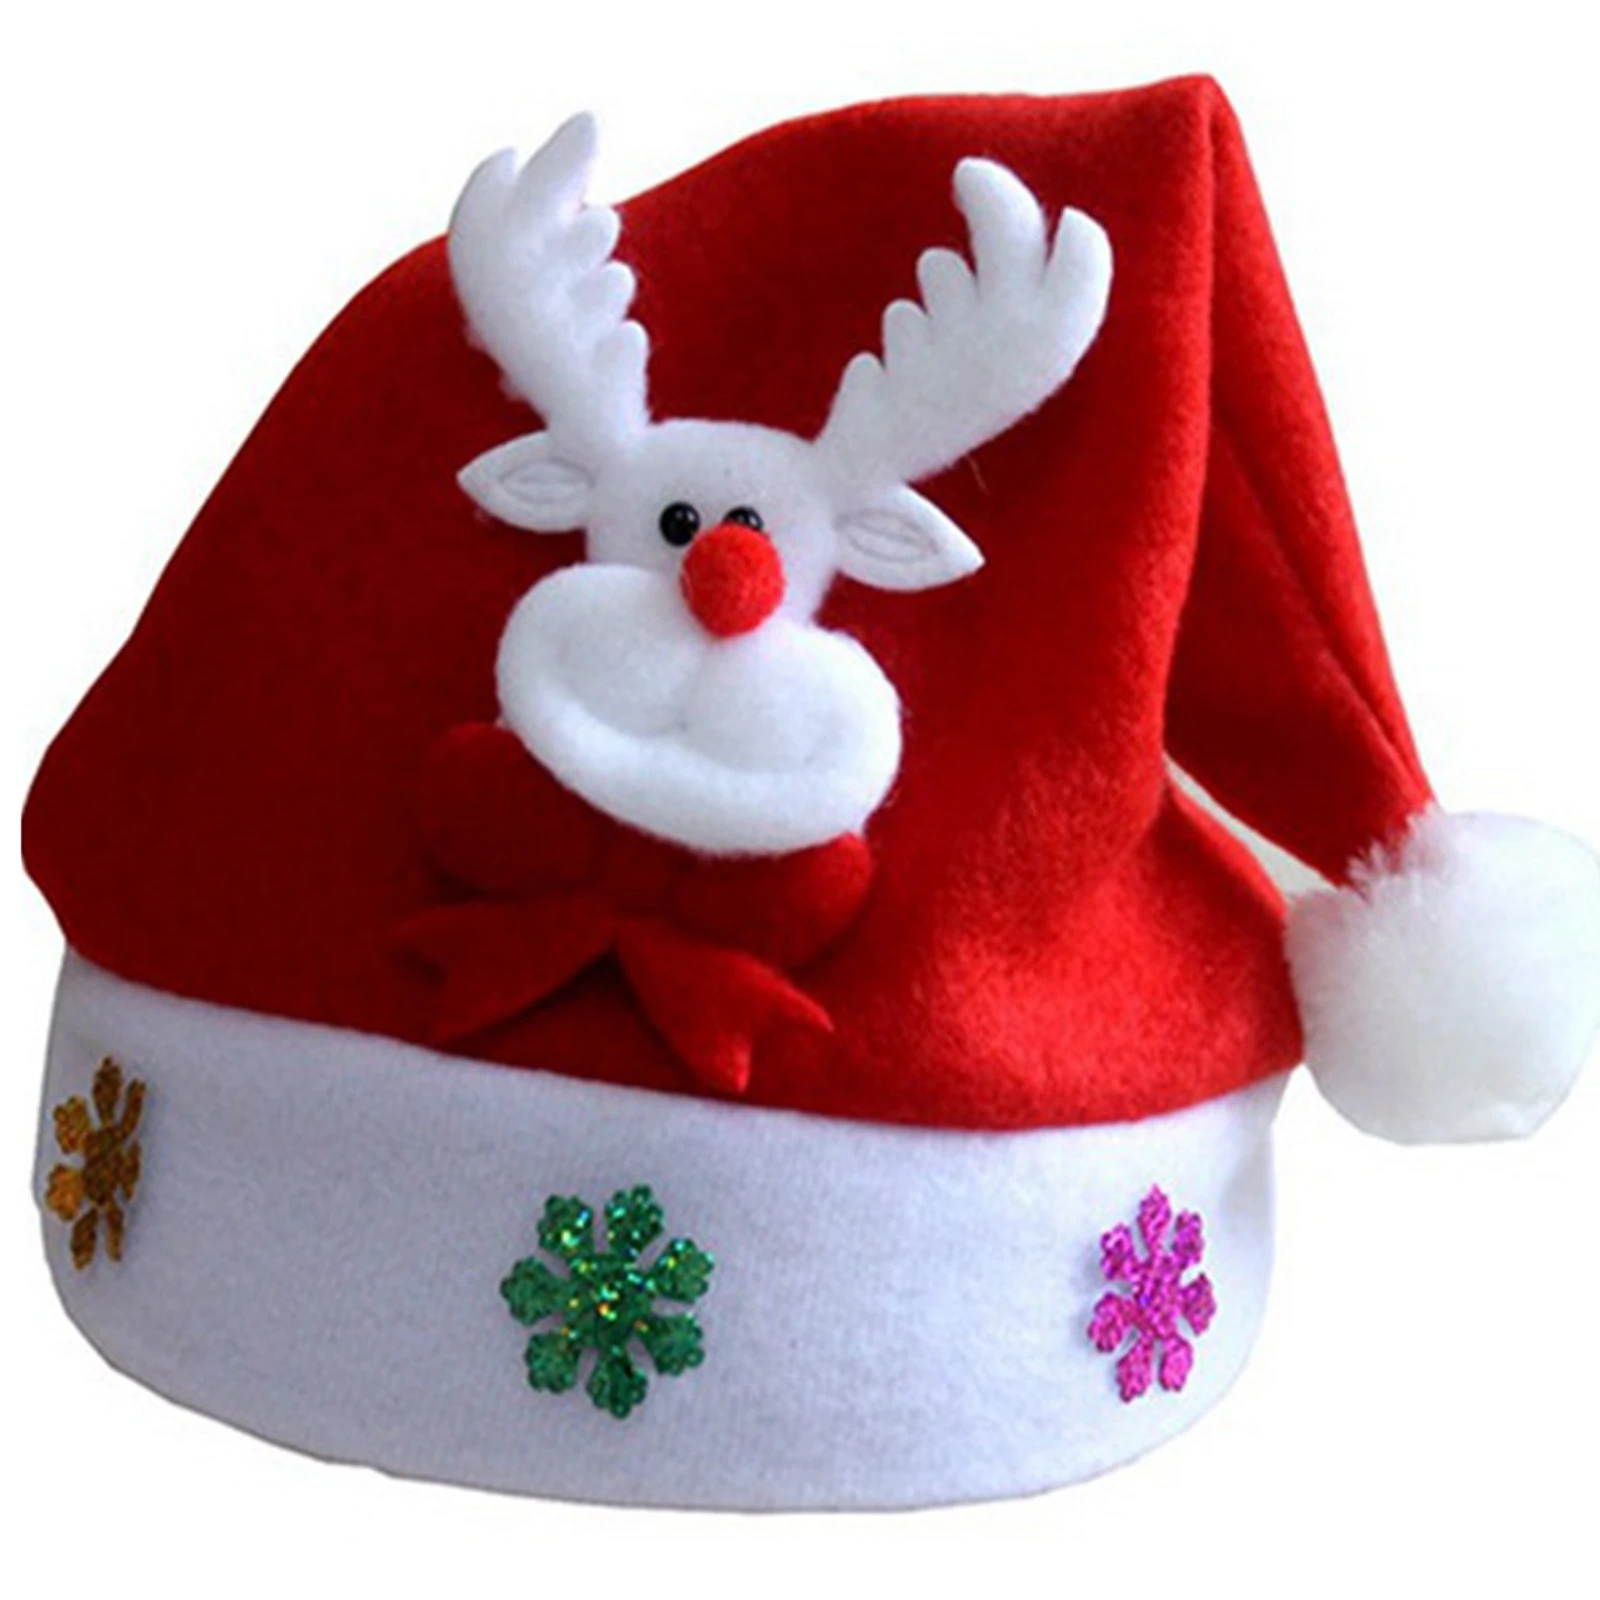 Pождество 1 шт. популярный мигающий костюм Санта Клауса со светодиодный